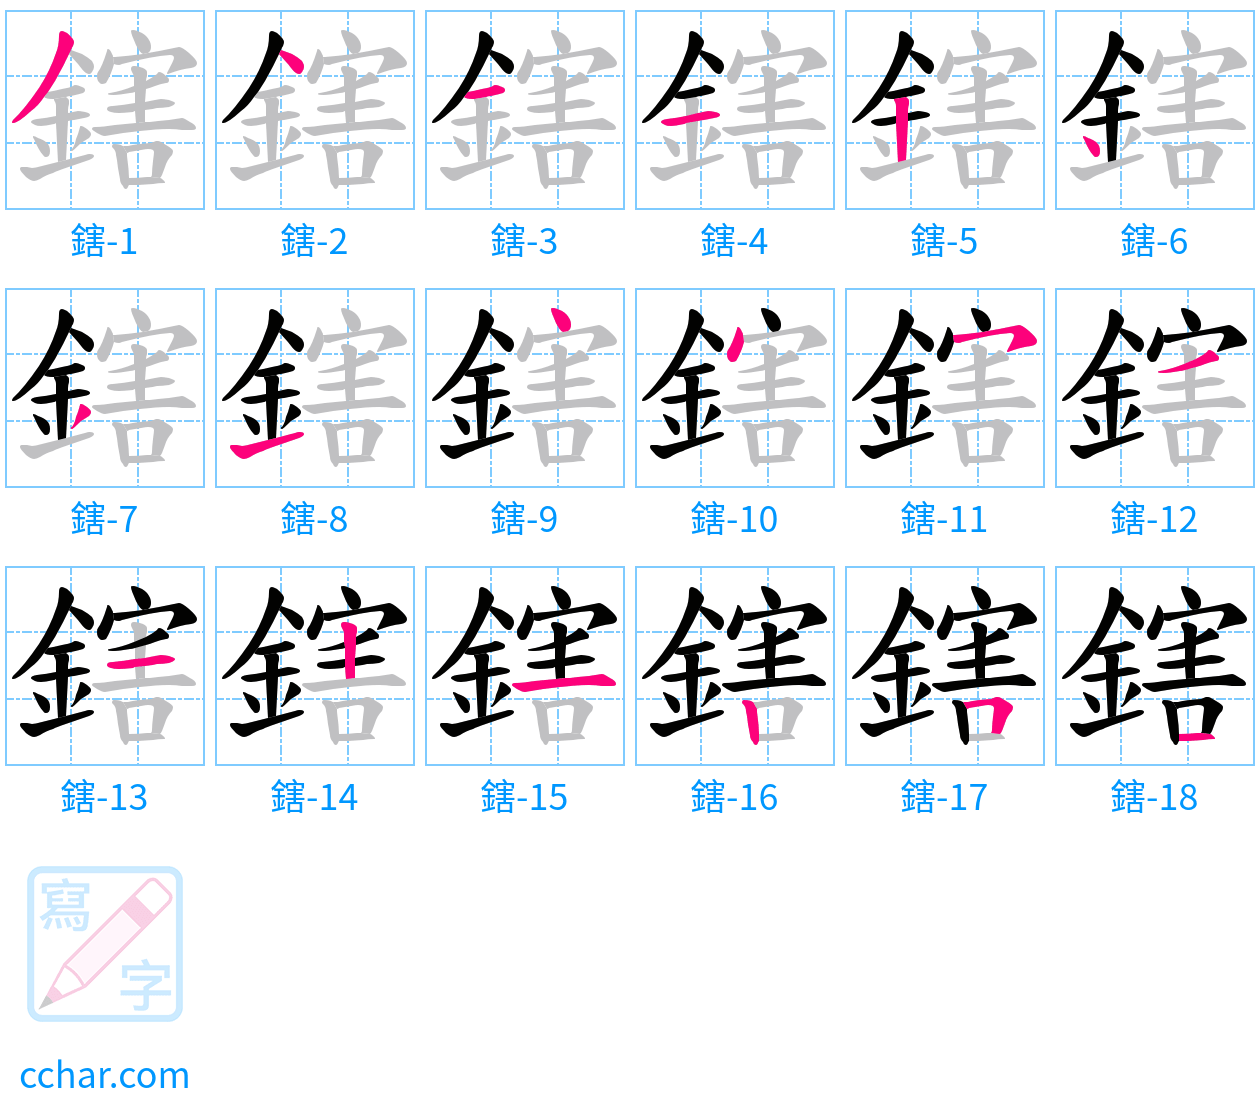 鎋 stroke order step-by-step diagram